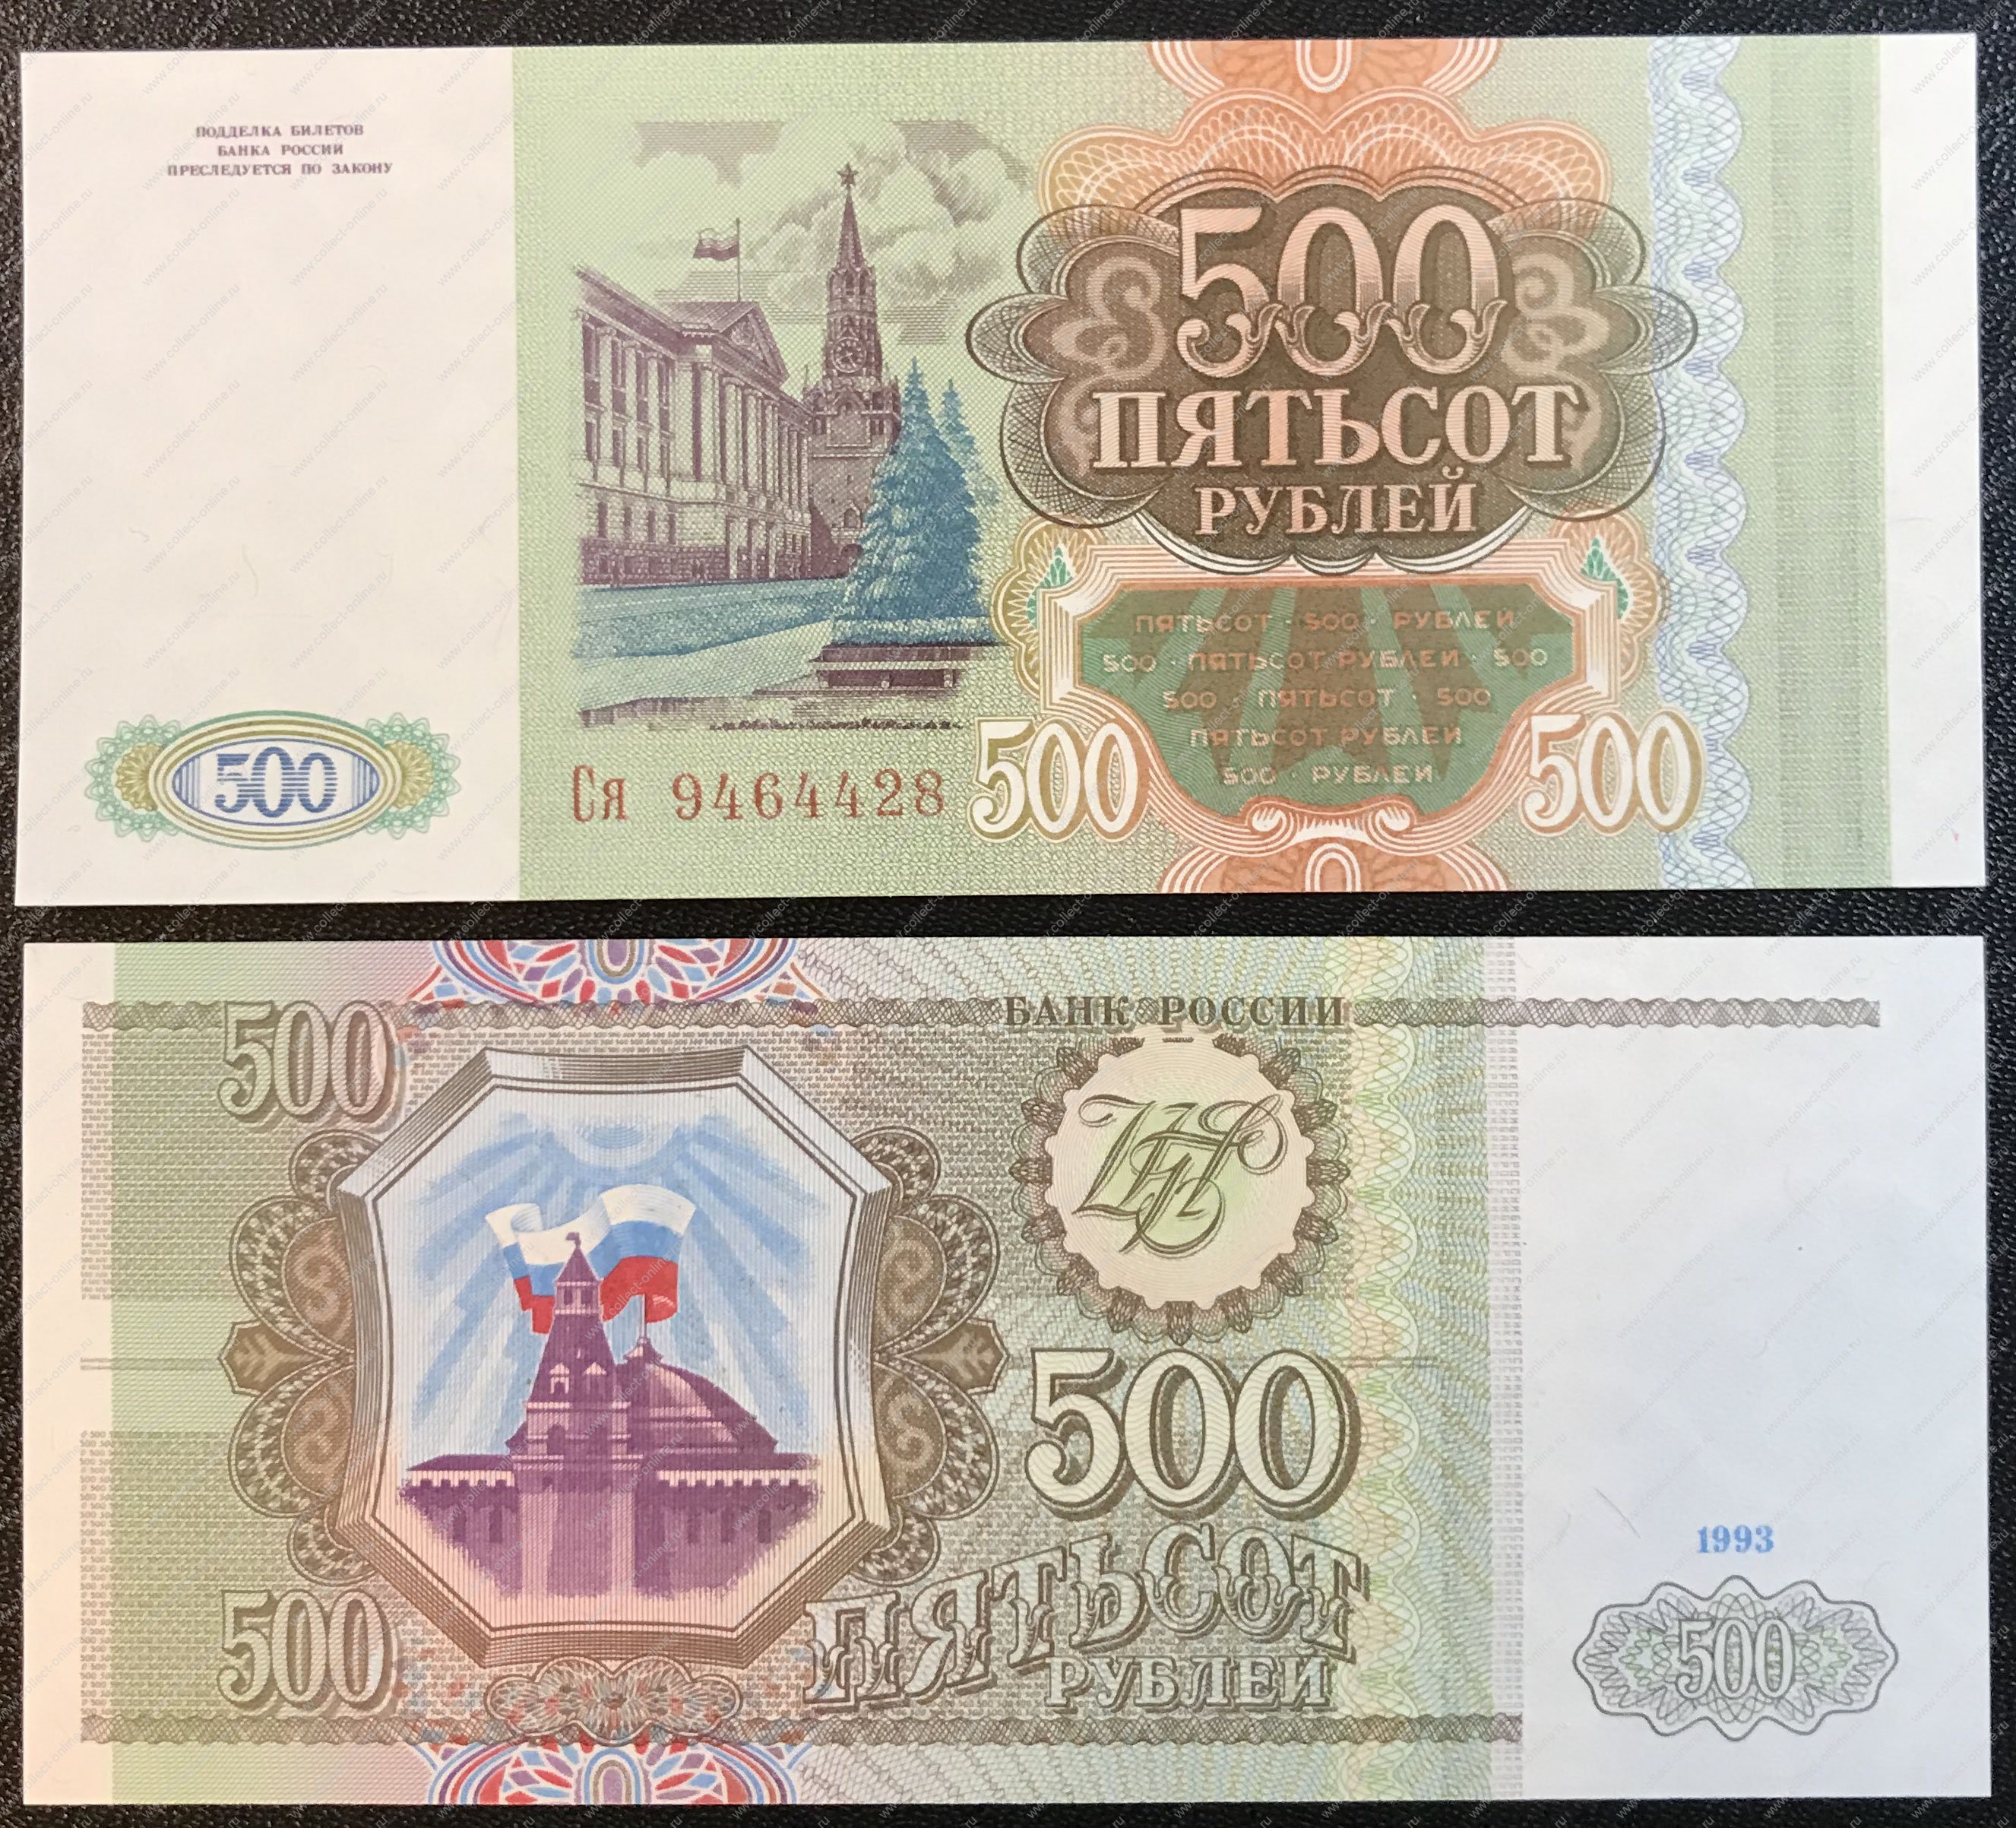 500 рублей 1993 цена. Купюра 500 рублей 1993 года. Банкнота 500 рублей 1993. Купюра 500 рублей 1993. 500 Рублей 1993 года.